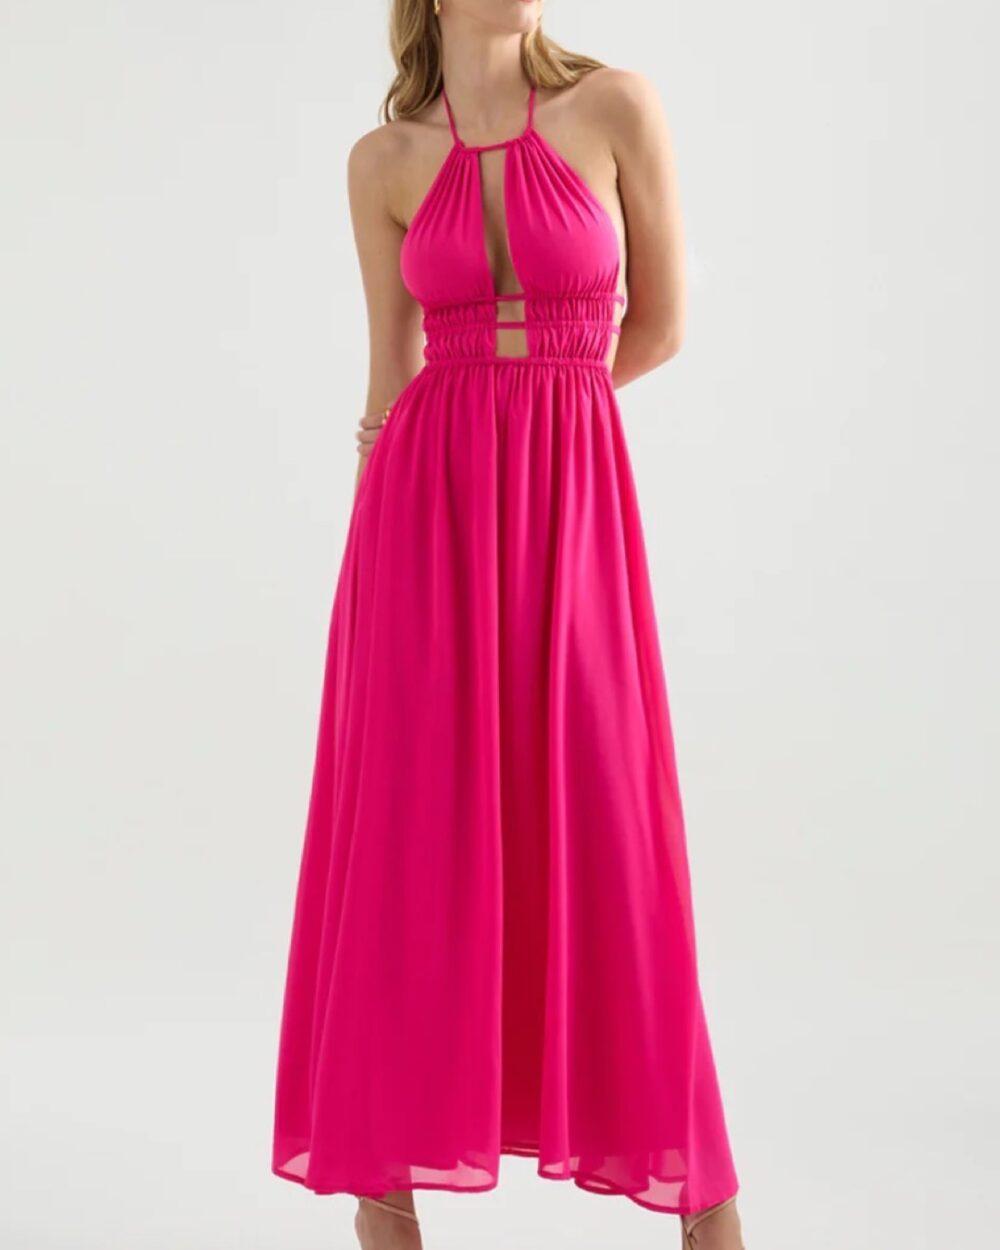 The-Palais-Dress-pink-Onrotate